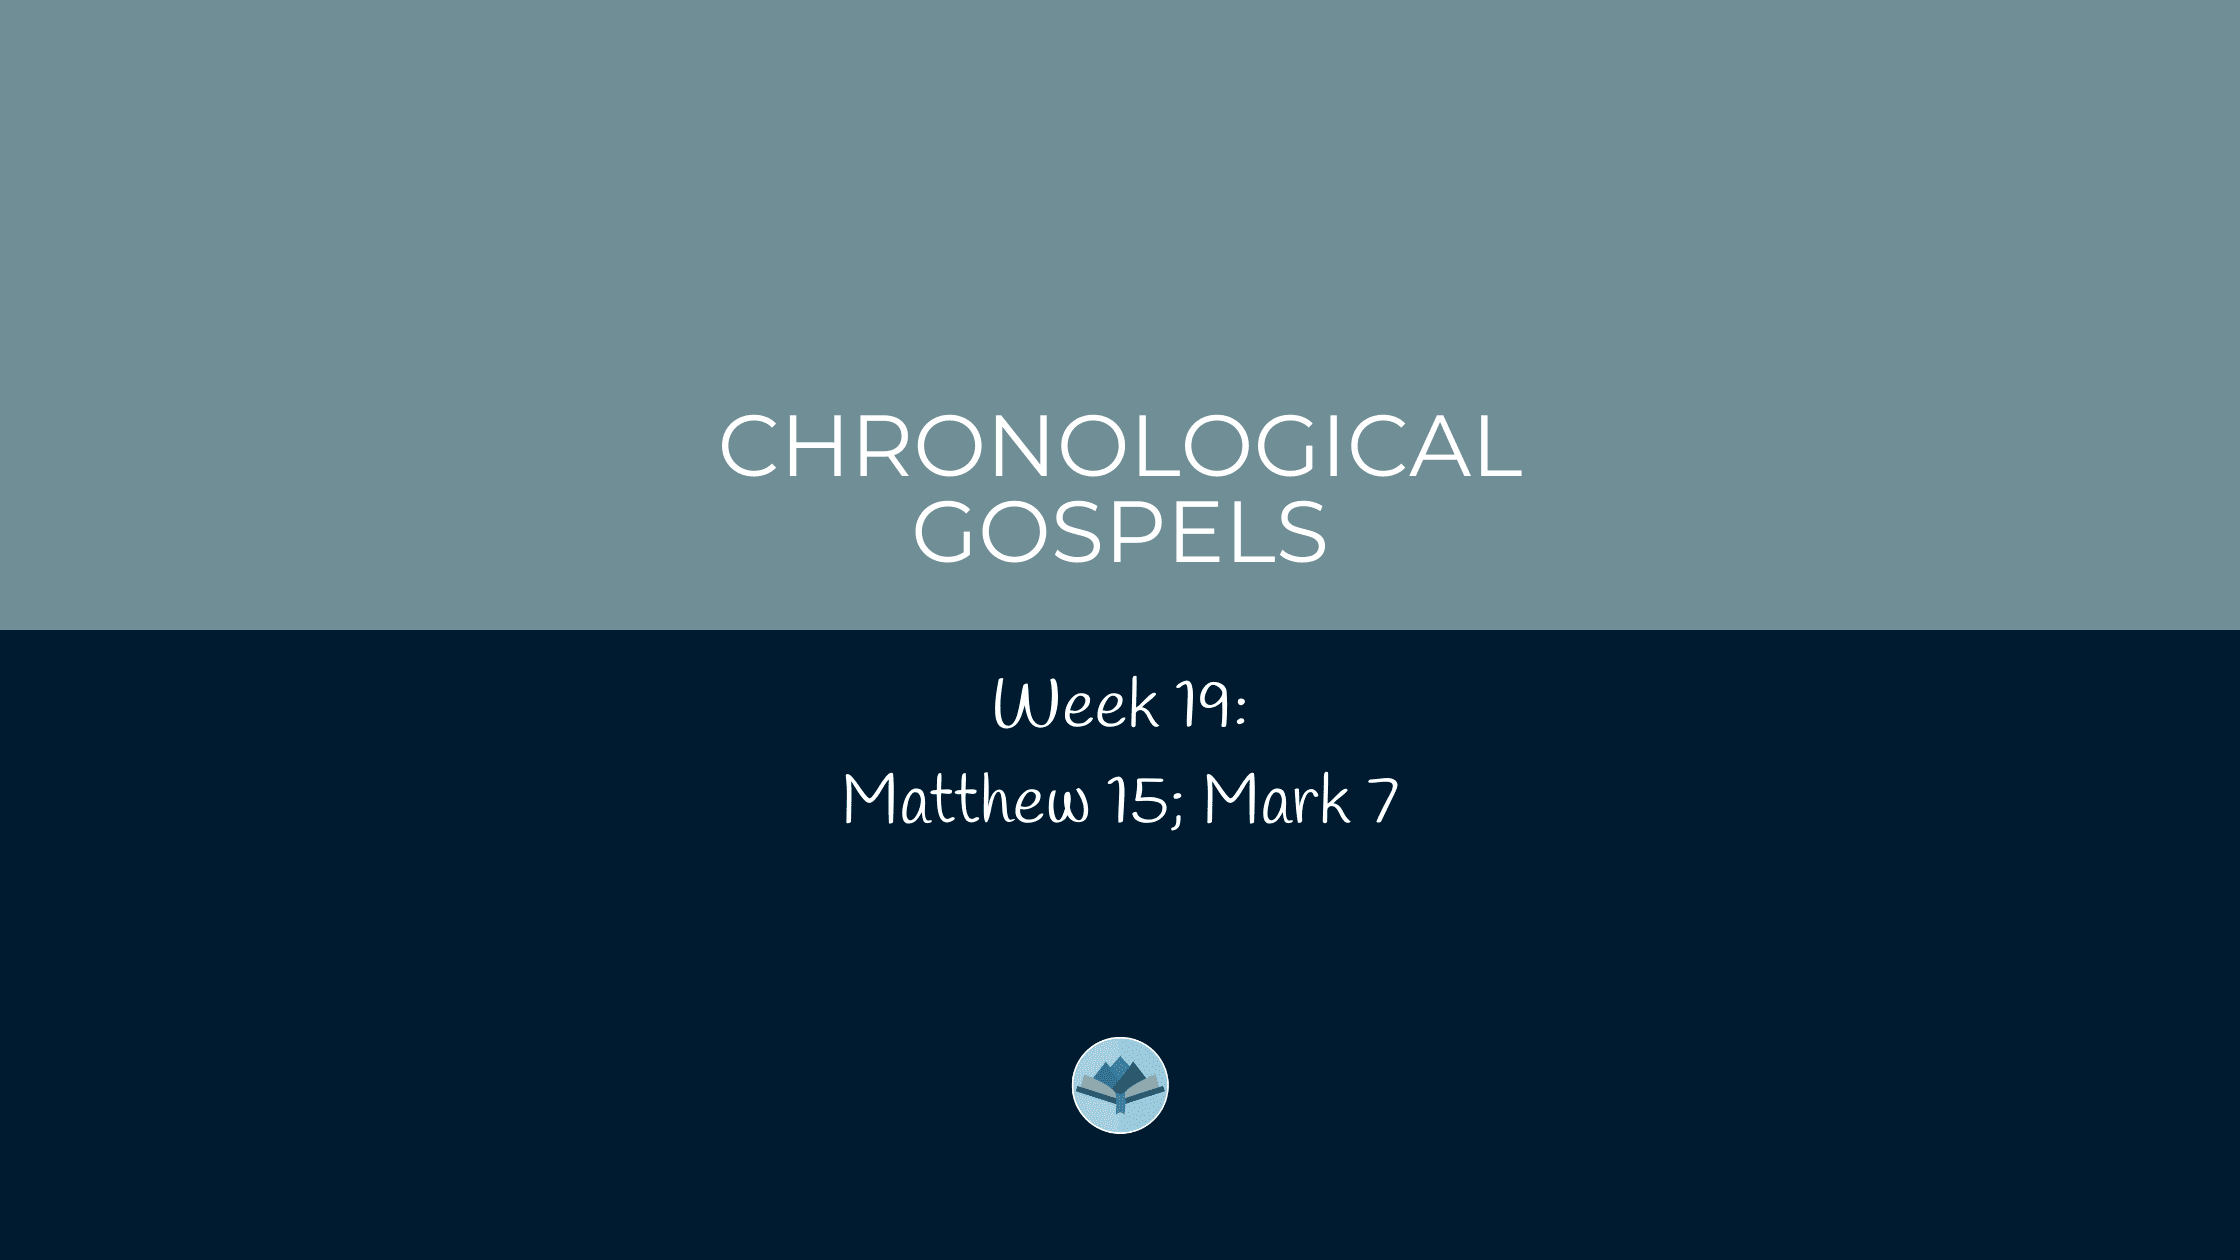 Chronological Gospels: Matthew 15; Mark 7